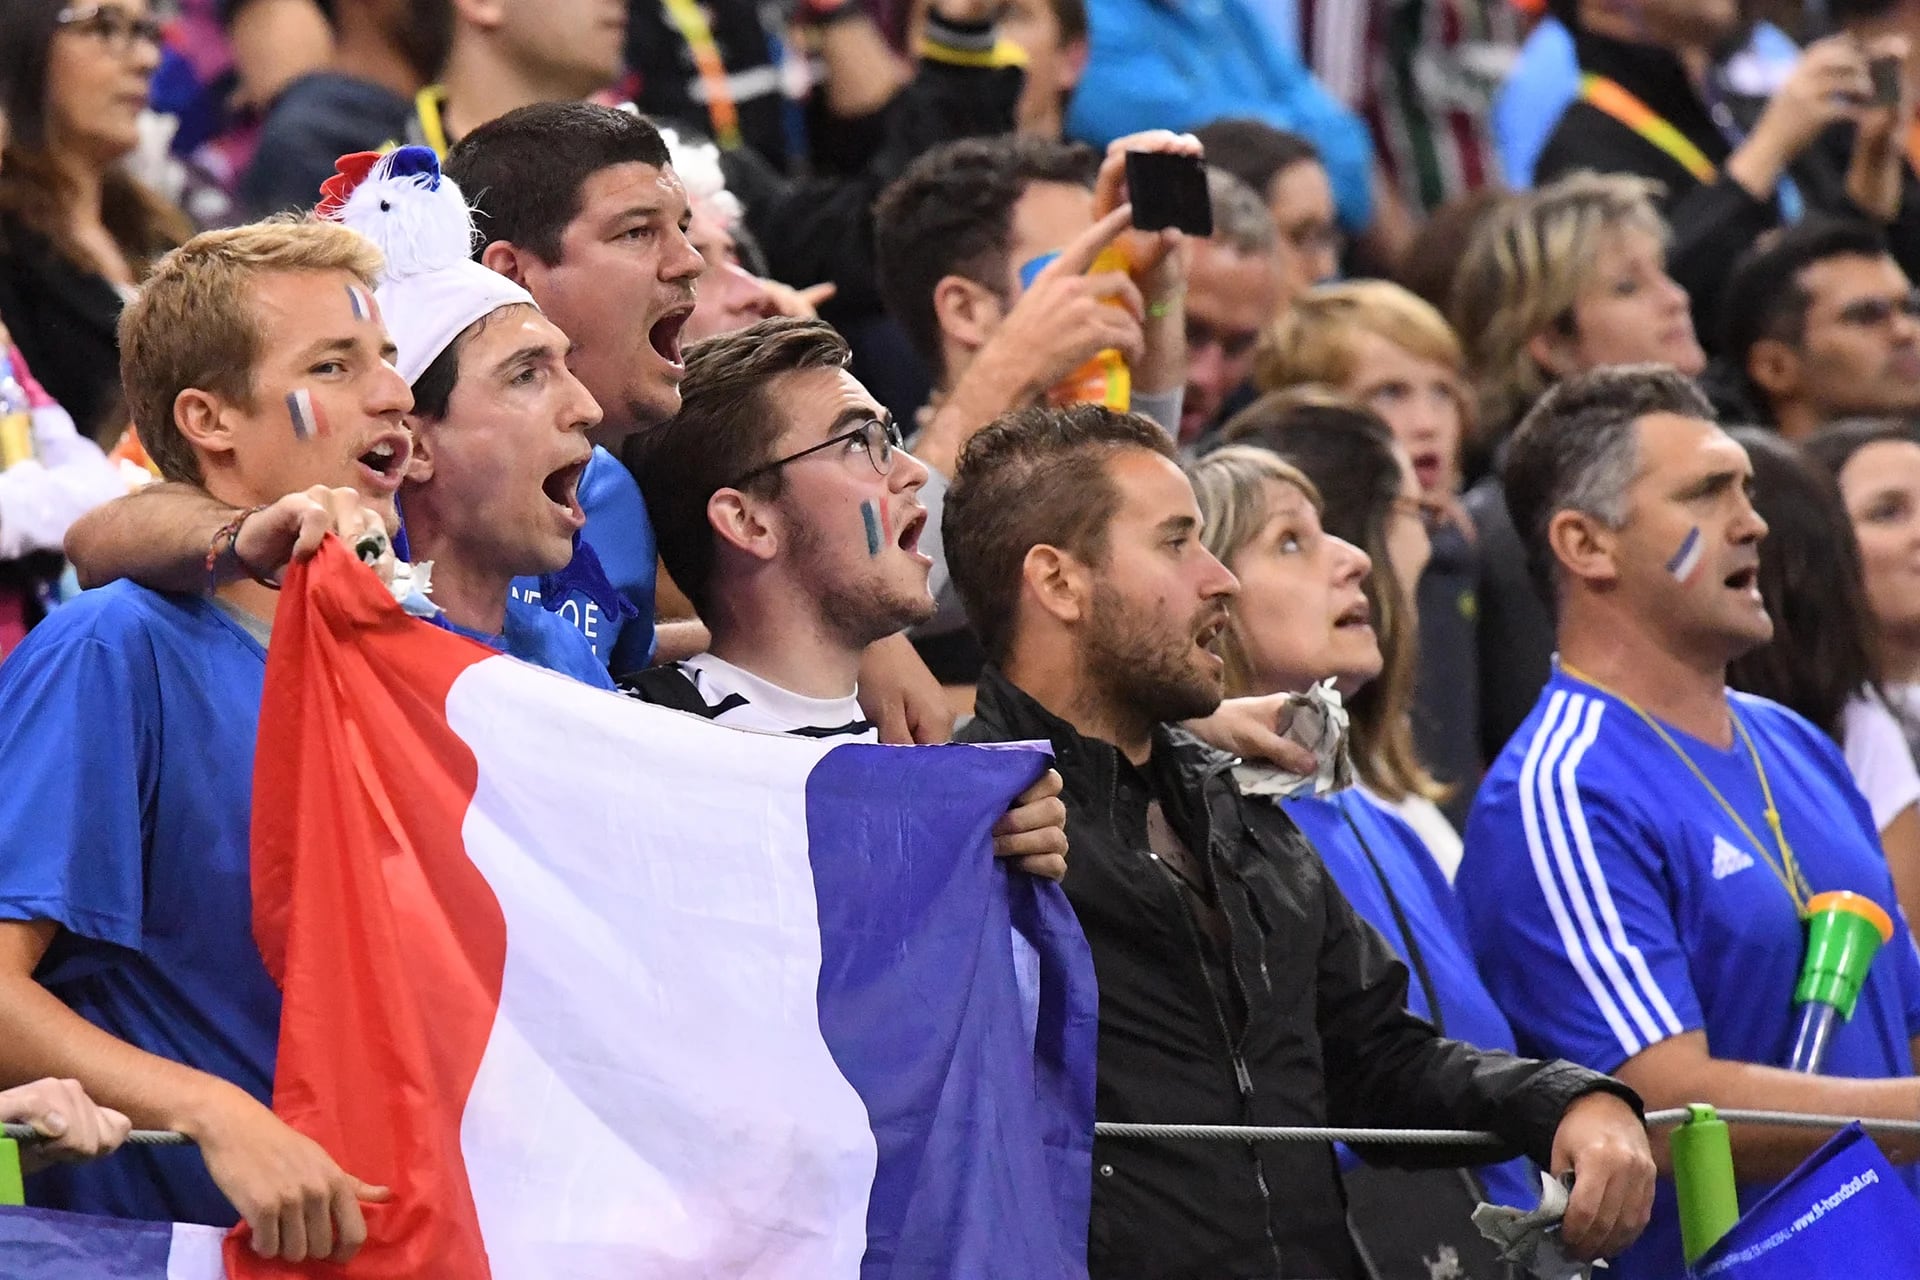 Hasta la bandera tricolor y la Marsellesa son motivo de fricción en el clima decolonial y de exacerbado identitarismo que se vive en Francia (AFP)